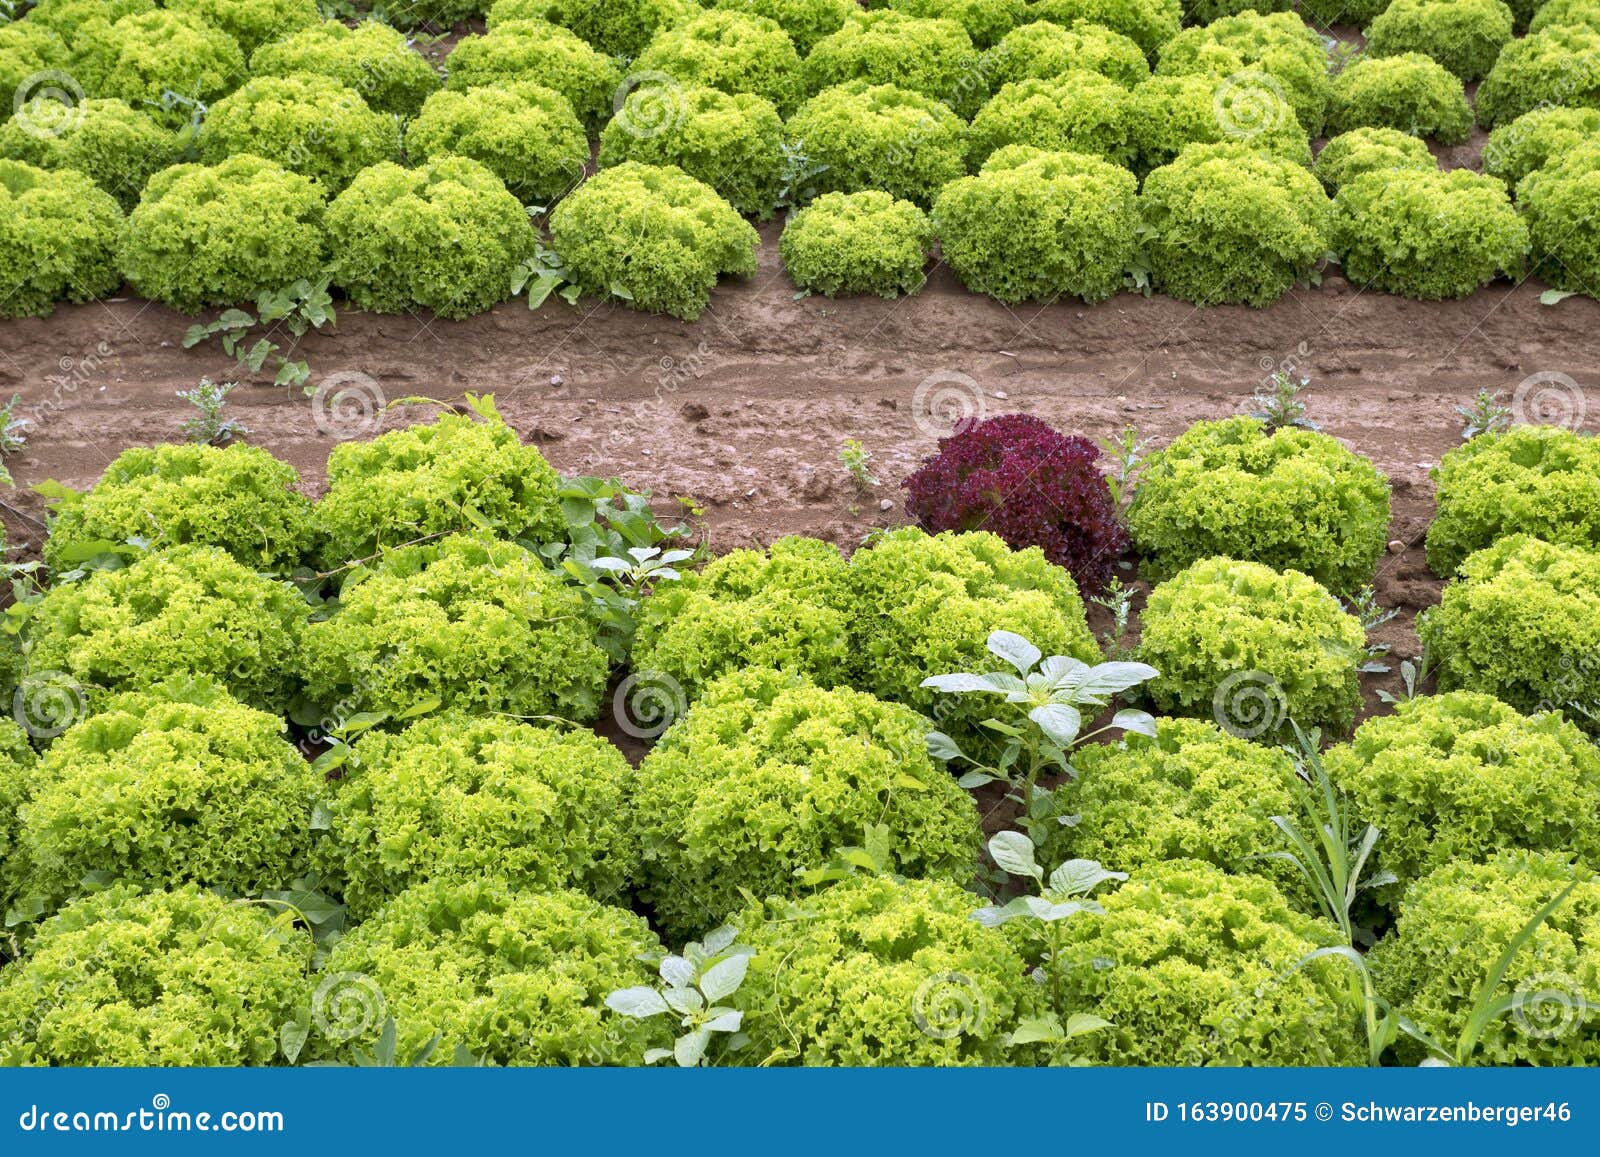 Lollo and Lollo Rosso Salad Field Stock - Image of bianco, 163900475